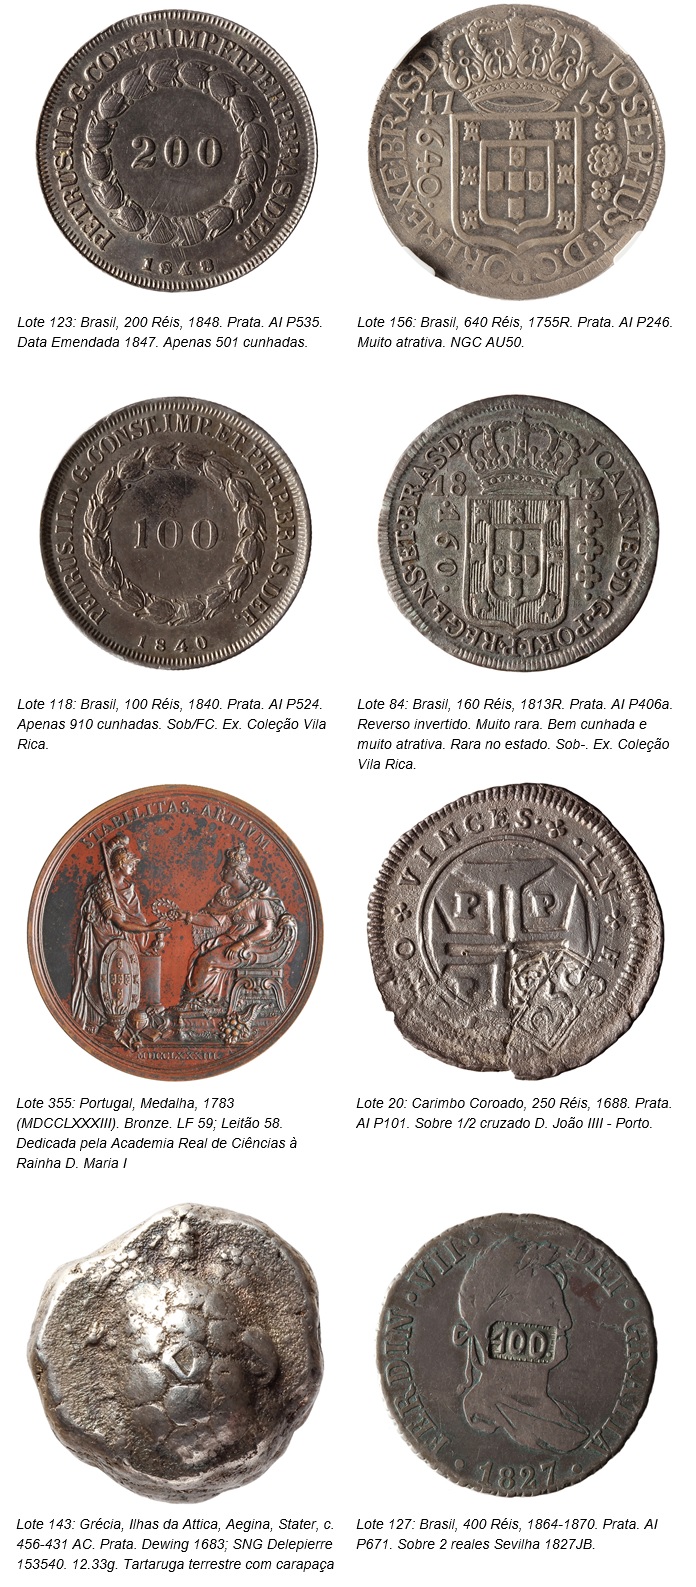 מכירה פומבית של פלביה קרדוסו סוארס: 7º מכירה פומבית של מטבעות וילה ריקה - חלק אוסף וילה ריקה 2, בהשתתפות. גילוי.